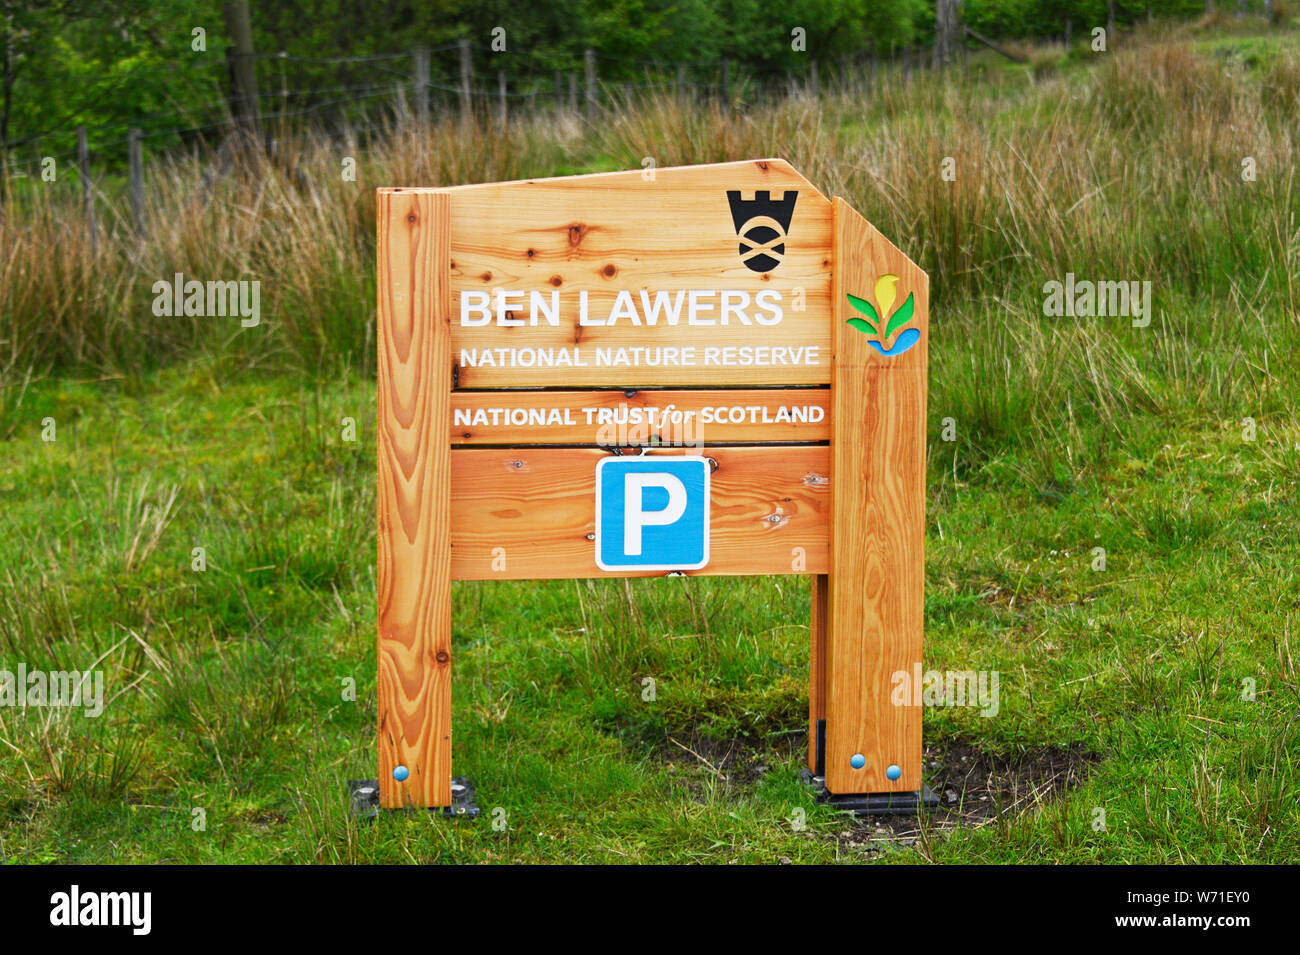 Namensschild. Ben Lawers National National Nature Reserve. National Trust für Schottland. Perth und Kinross, Schottland, Großbritannien, Europa. Stockfoto